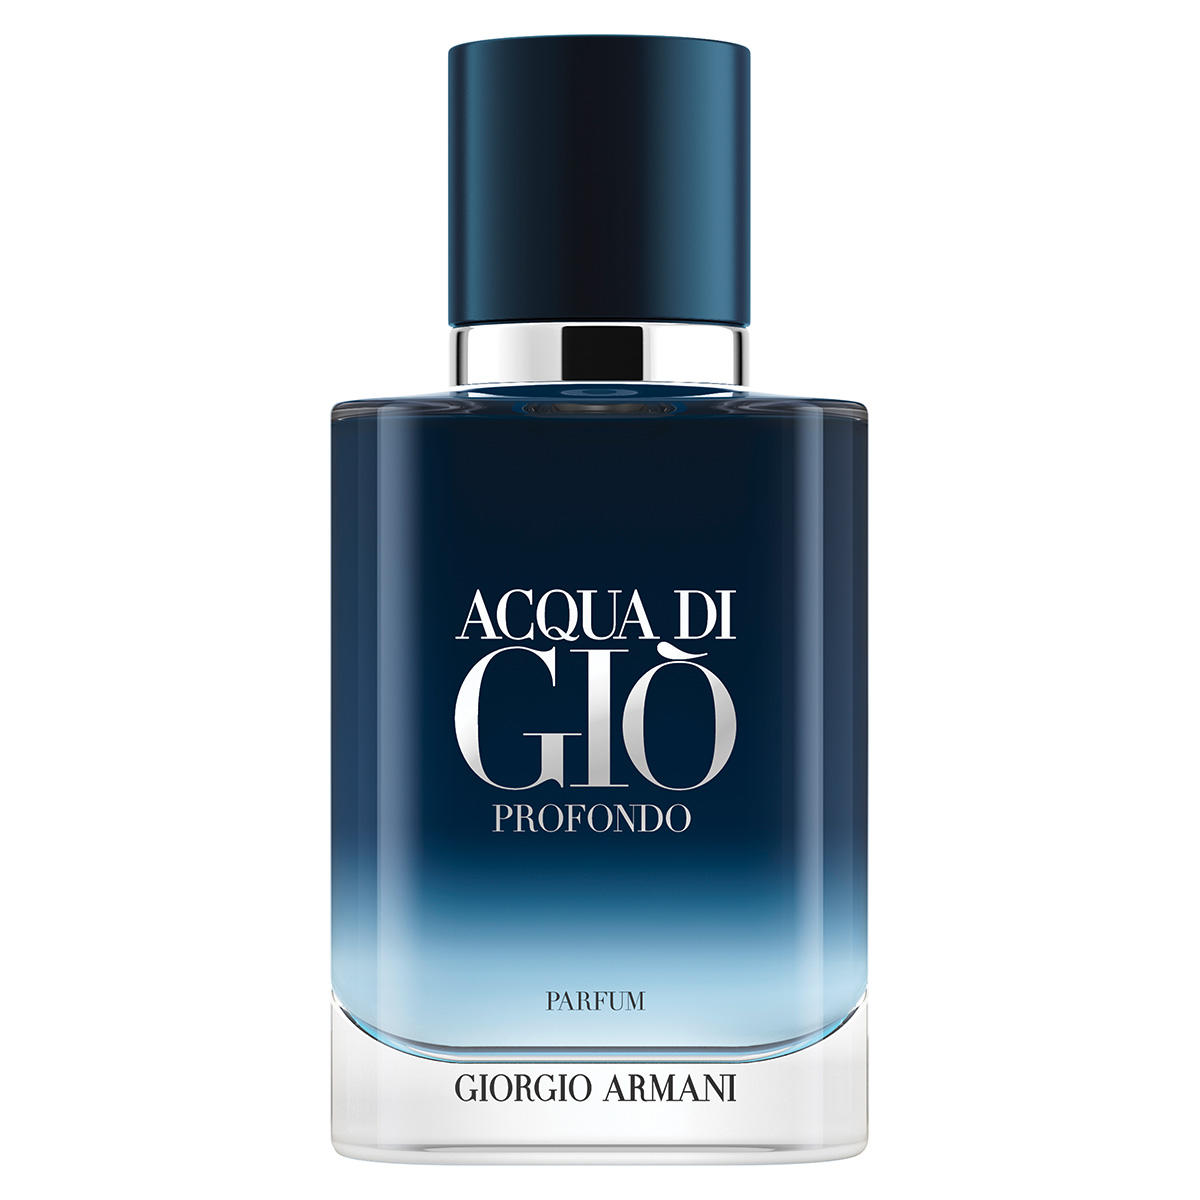 Giorgio Armani Acqua di Giò Profondo Parfum 30 ml - 1